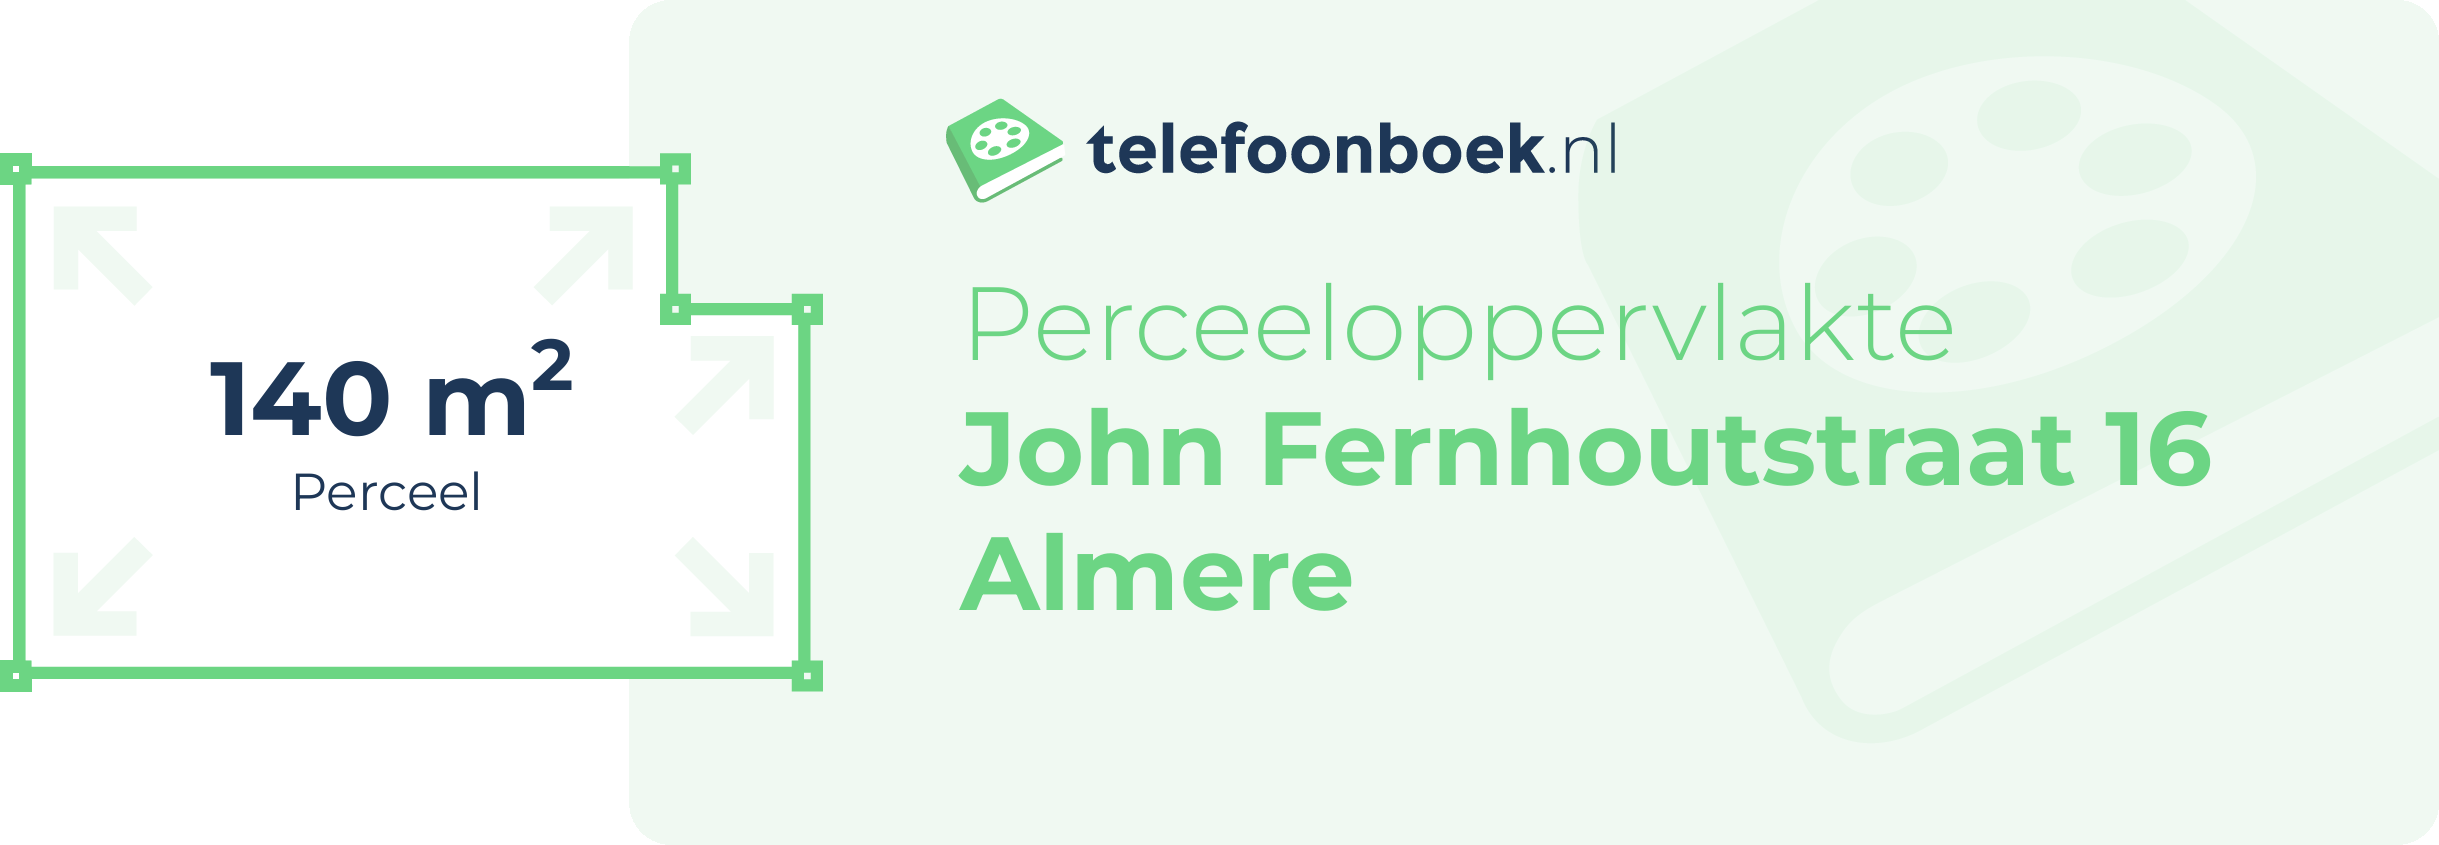 Perceeloppervlakte John Fernhoutstraat 16 Almere